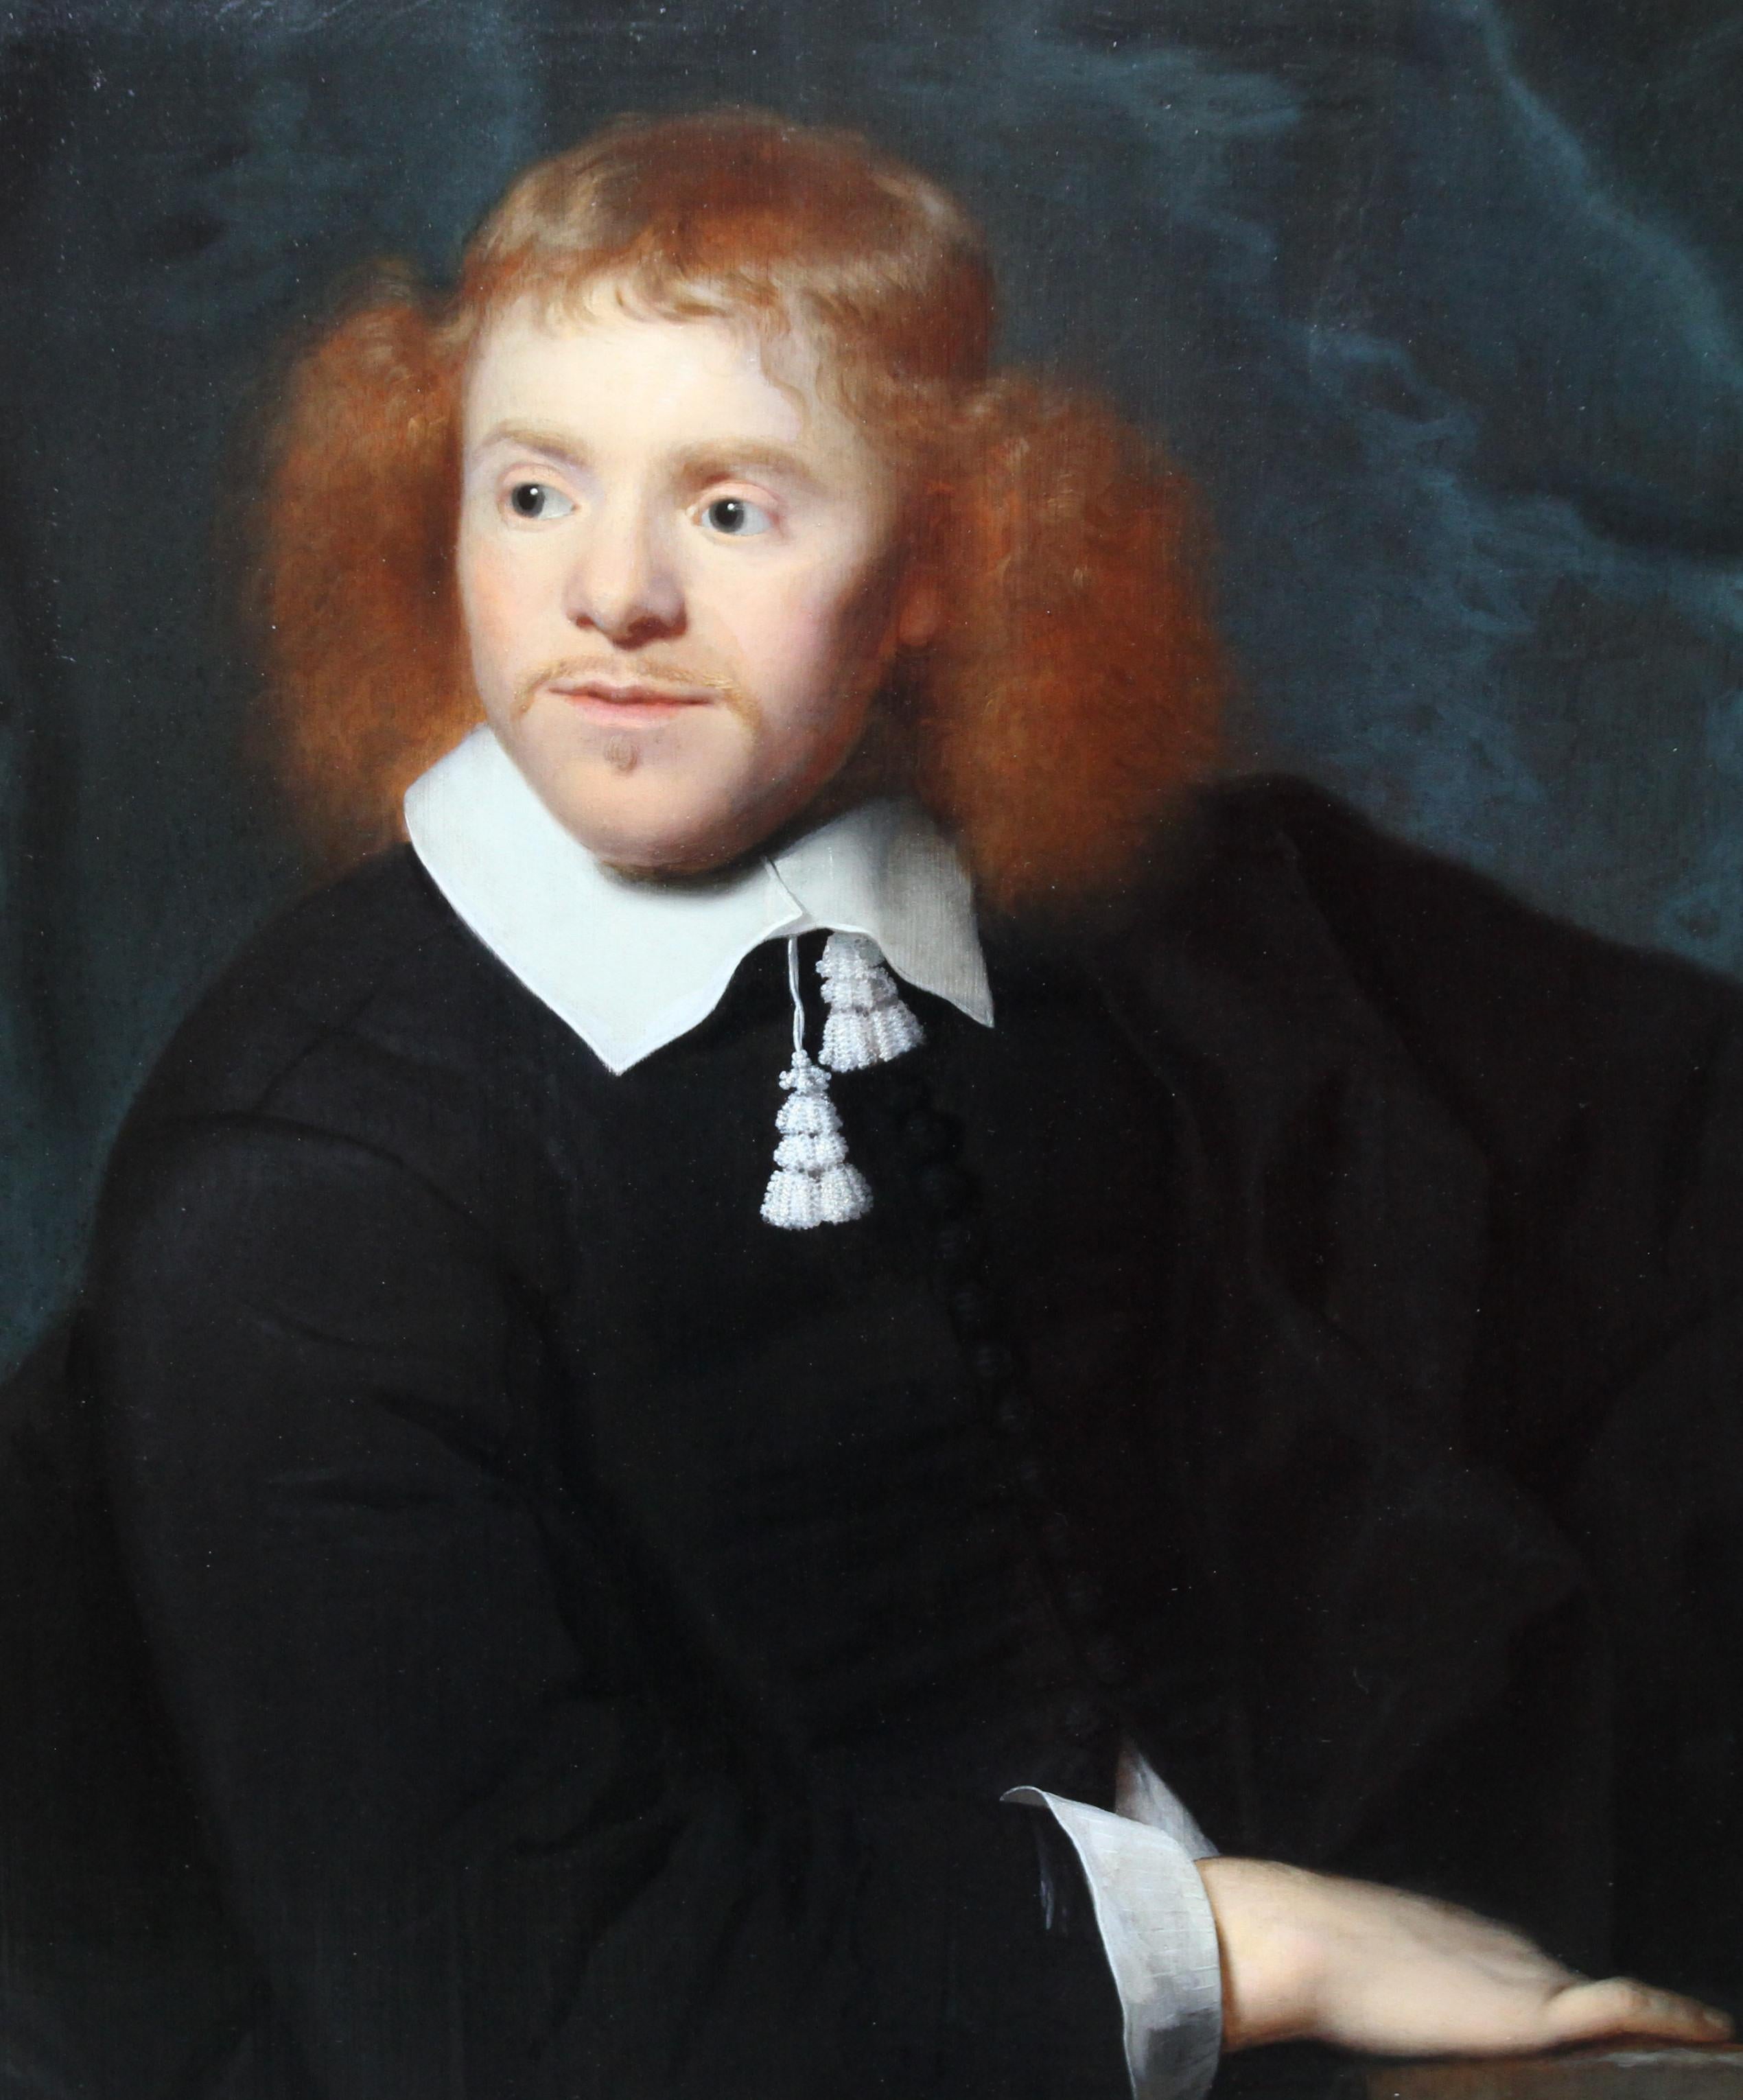 Dutch Golden Age Portrait - Old Master 17thC art male portrait oil painting  - Old Masters Painting by Simon Luttichuys